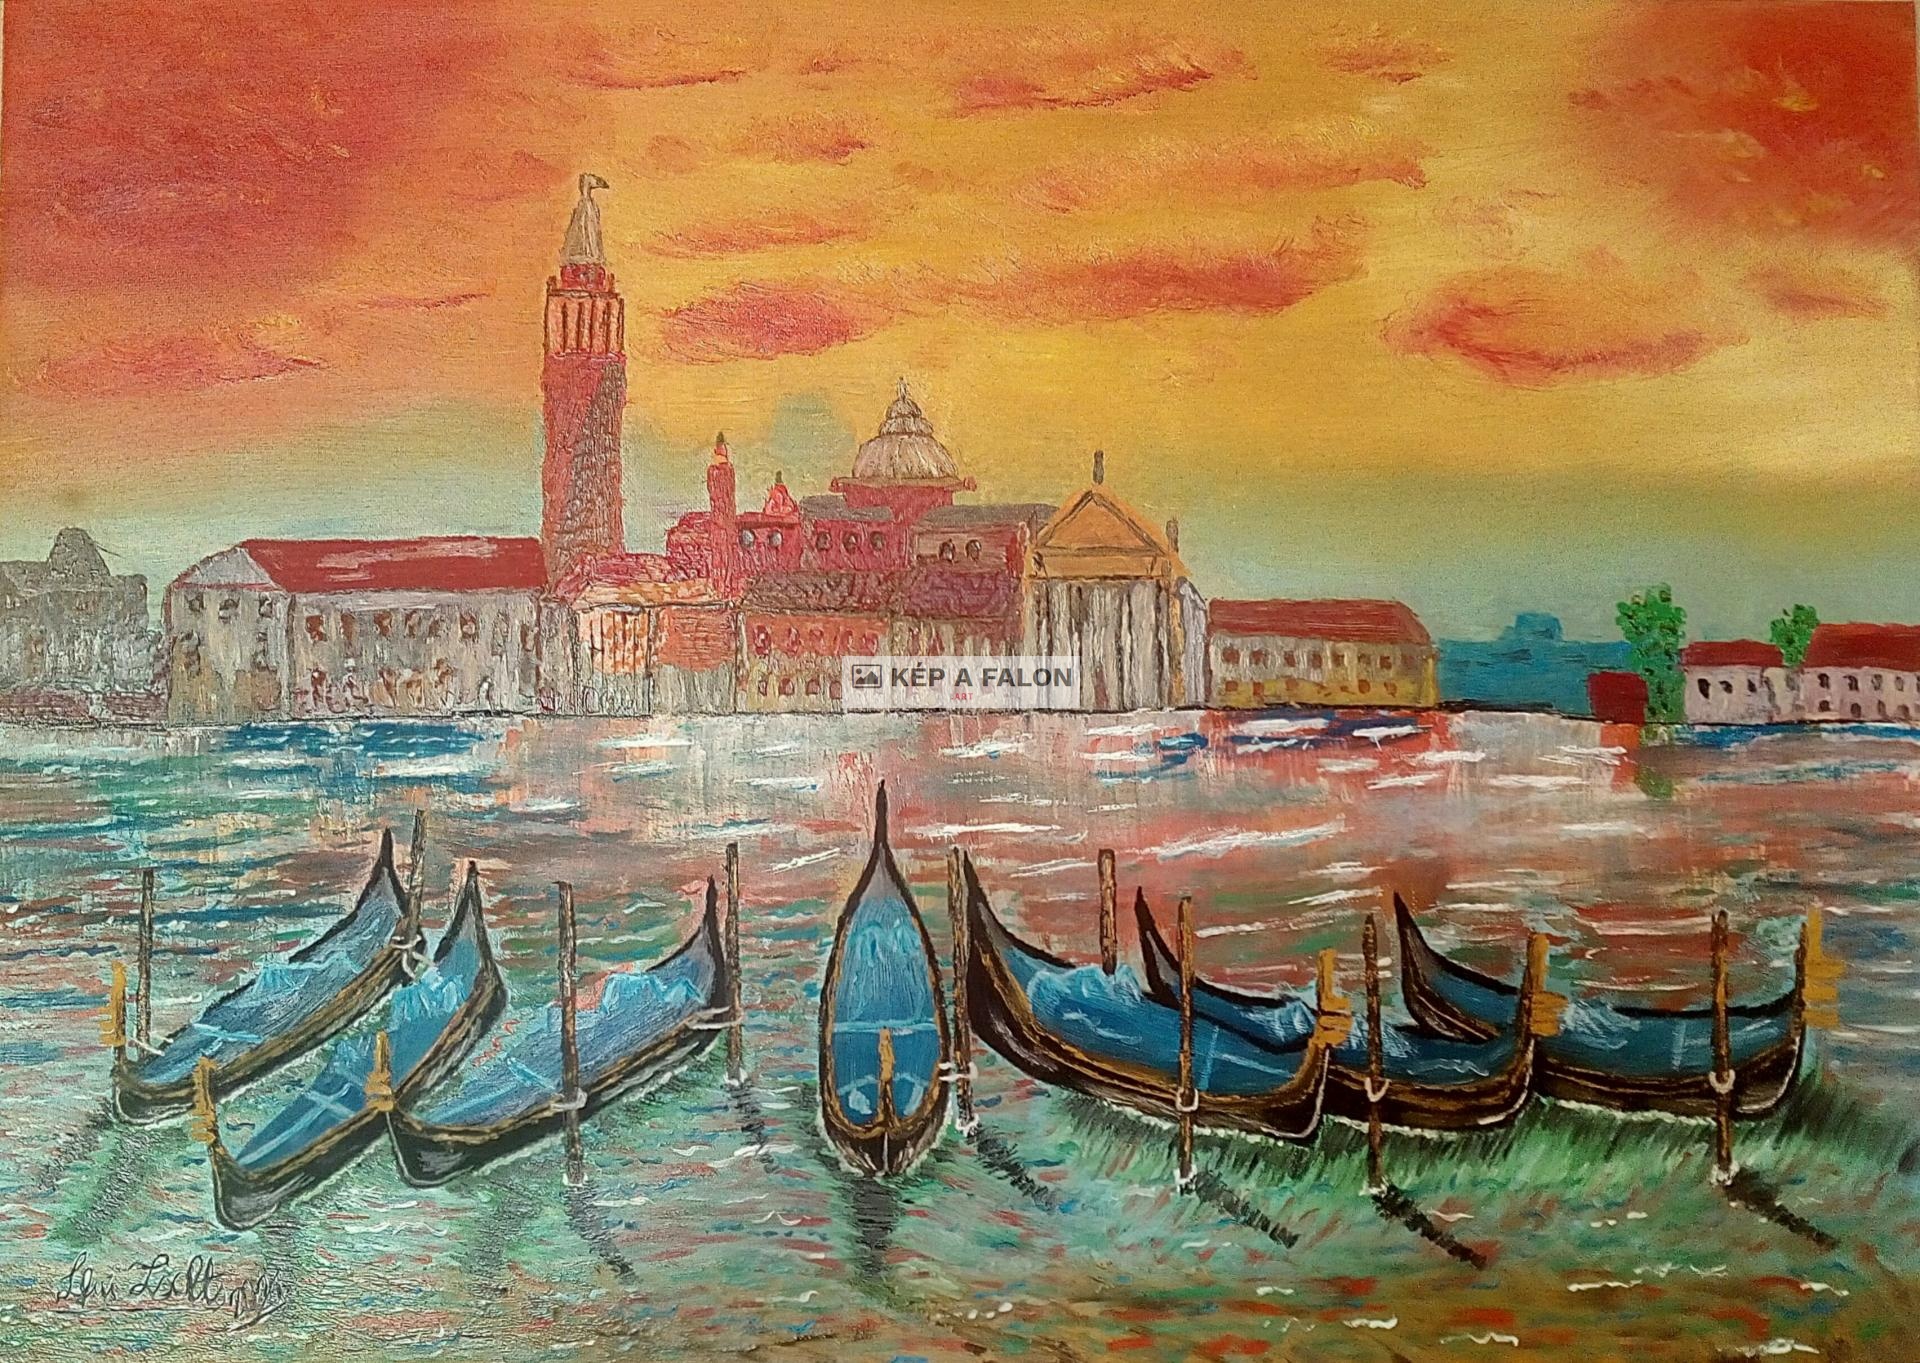 Venezia by: Skribek Zsolt | 2021, olaj festmény